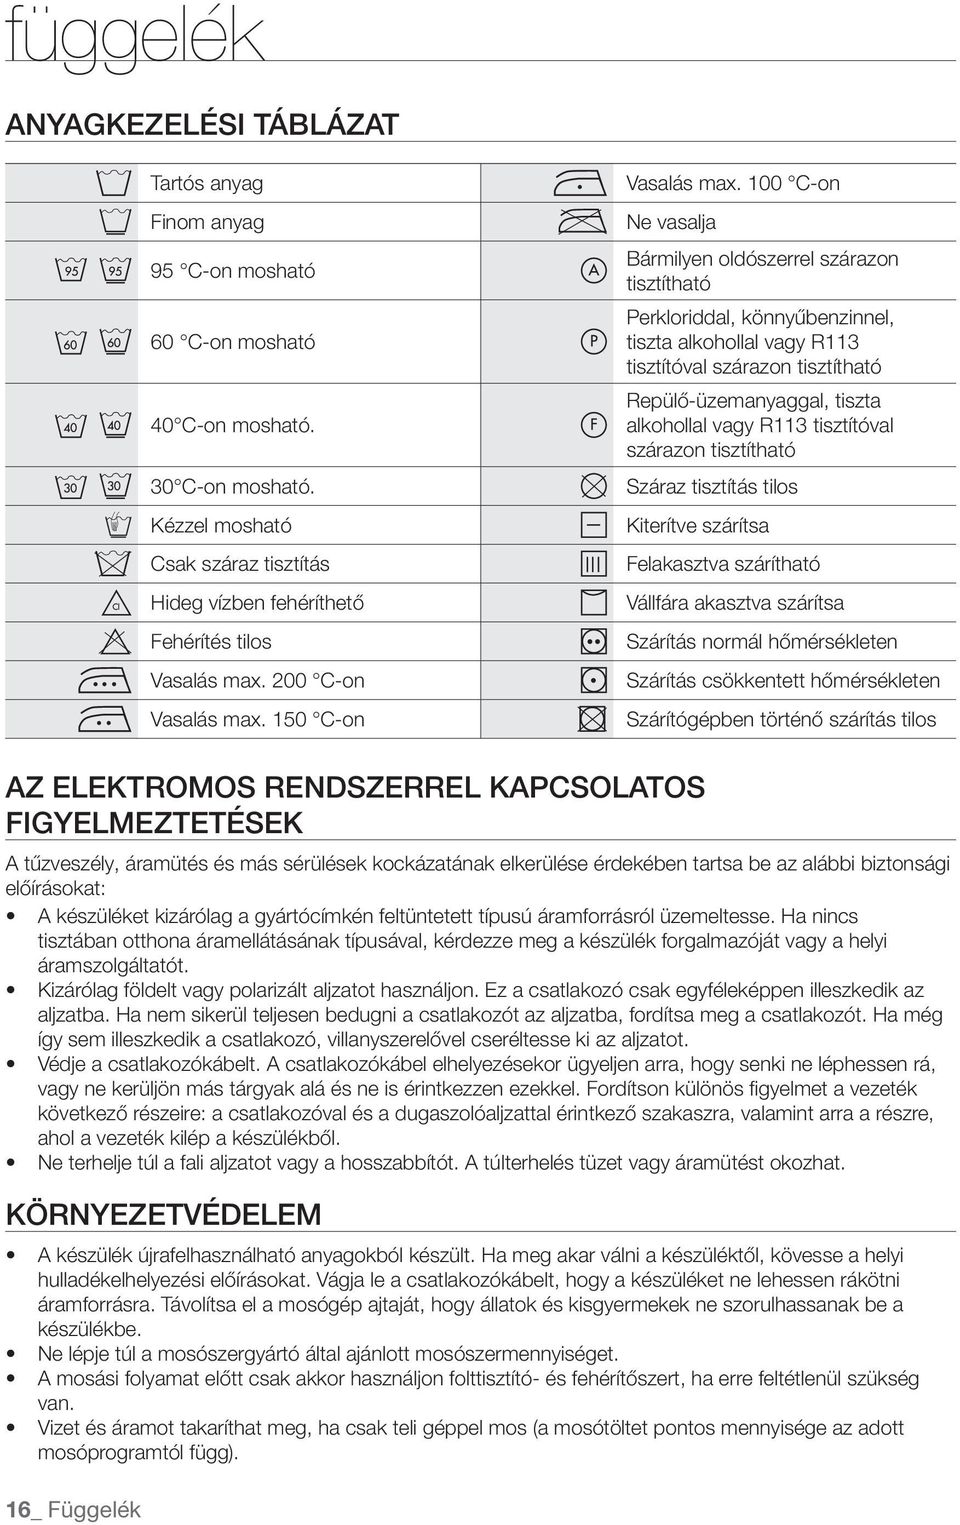 Mosógép használati útmutató - PDF Ingyenes letöltés